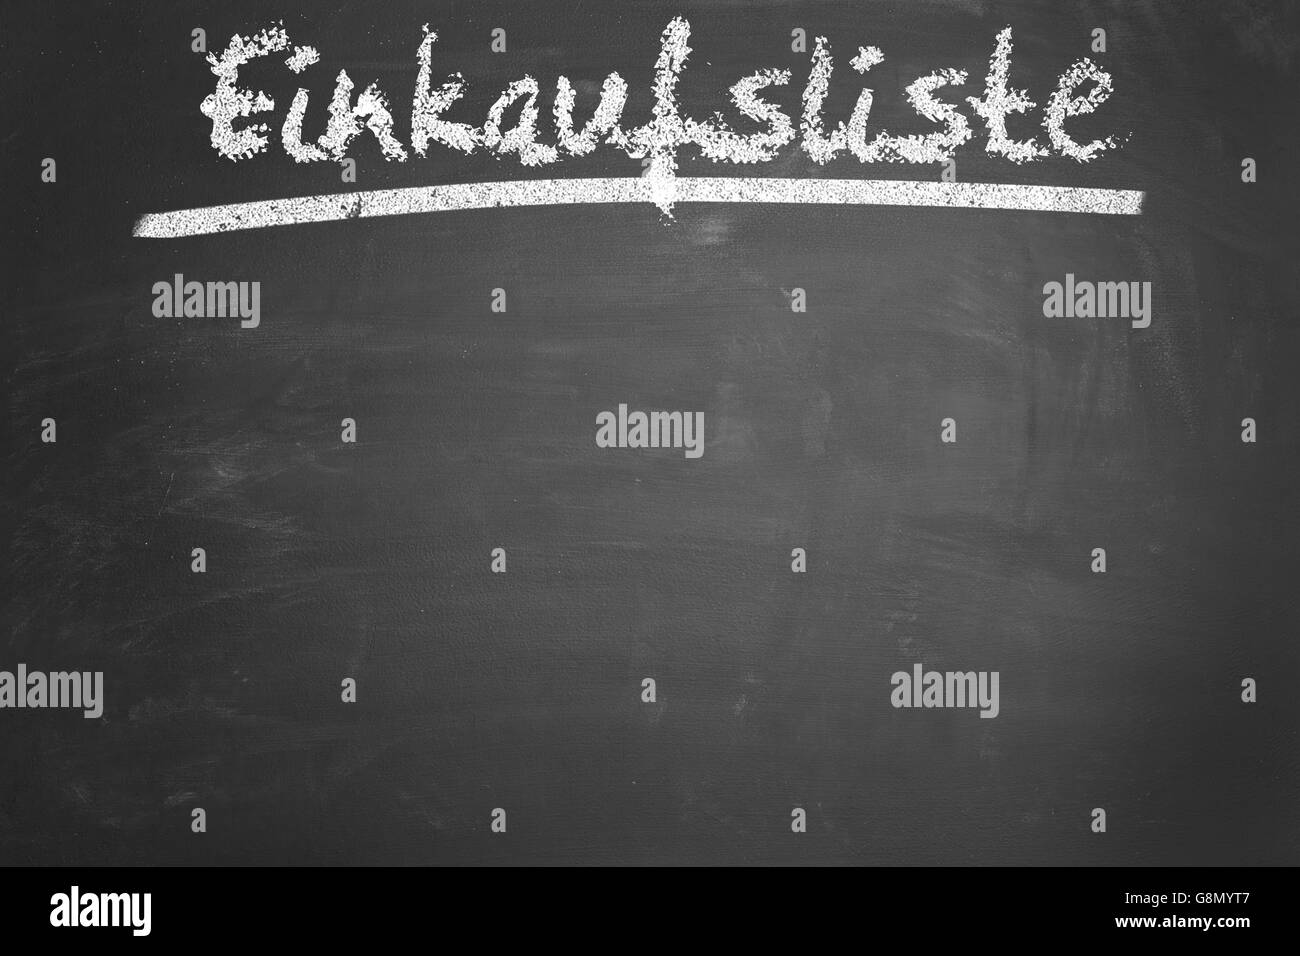 Tableau noir avec l'allemand 'expression' Einkaufsliste (liste d'achats) Banque D'Images